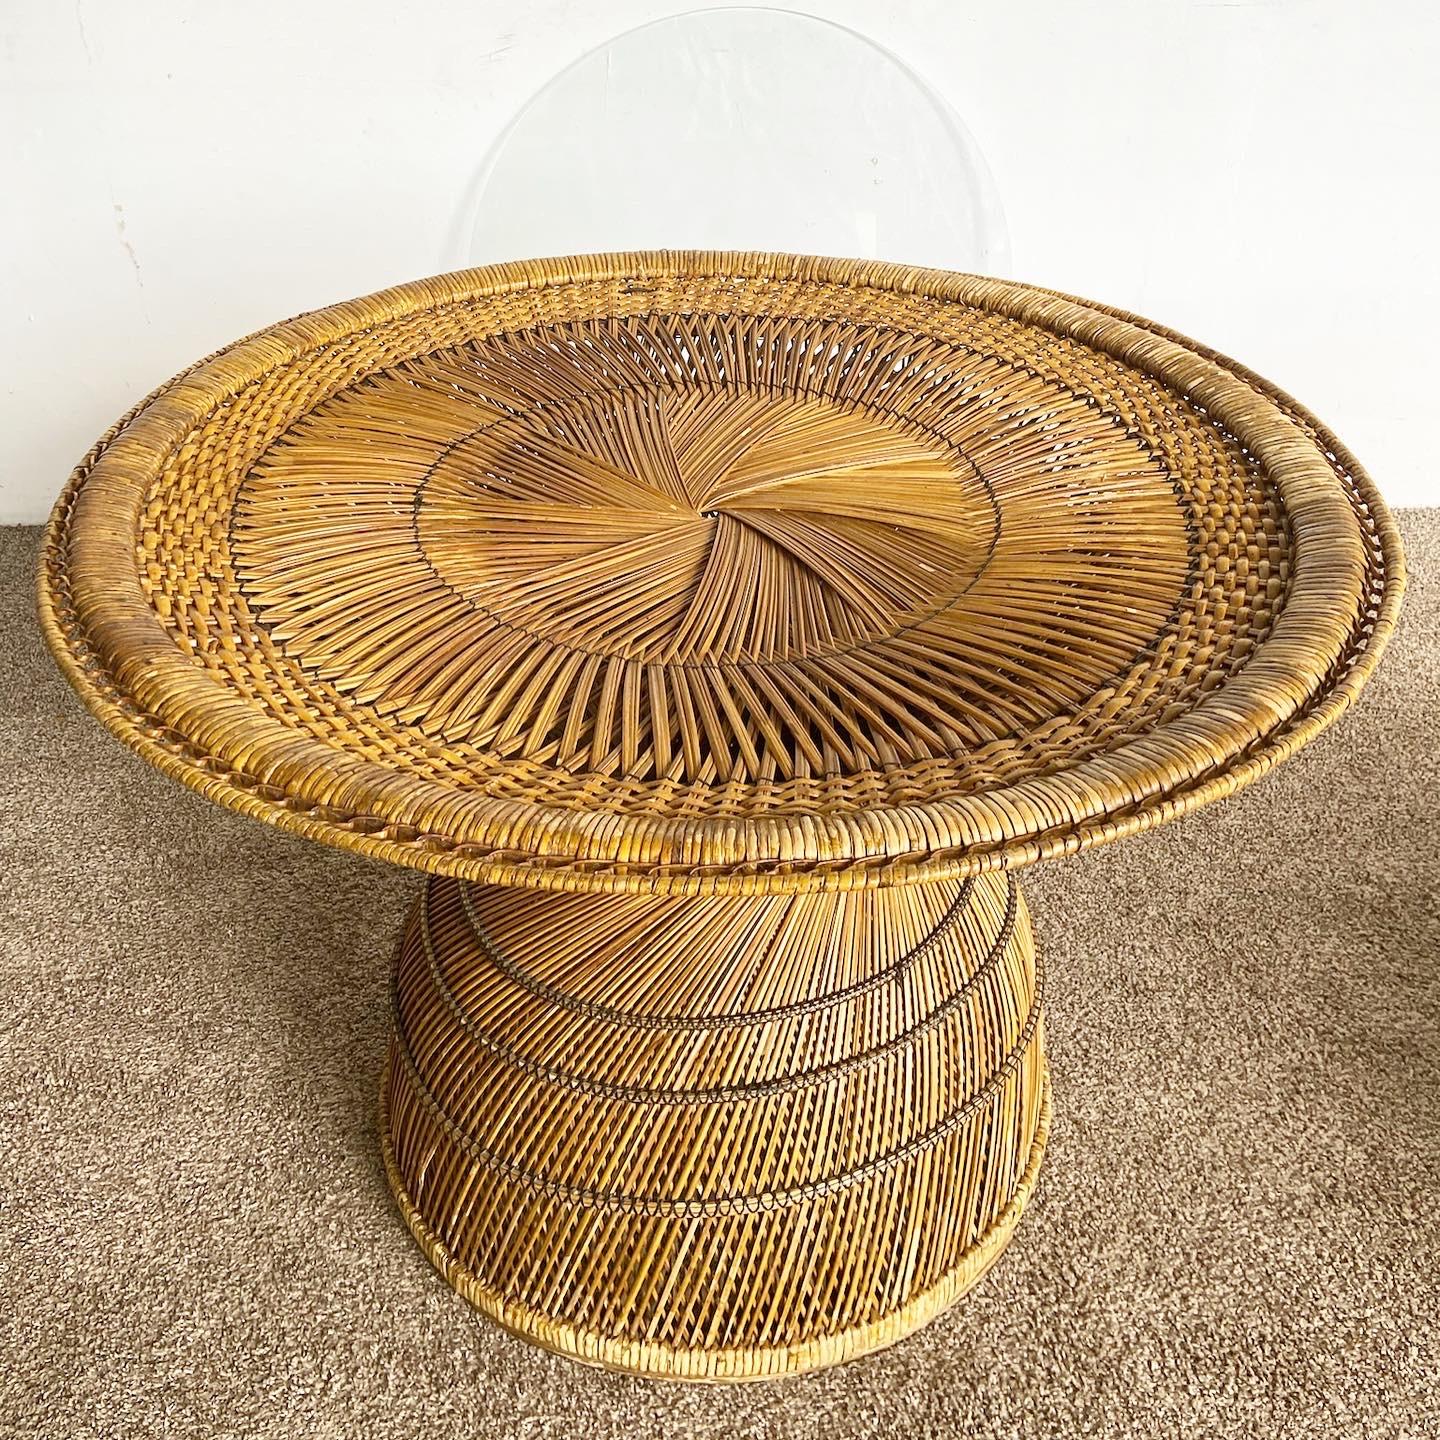 Peppen Sie Ihren Essbereich mit dem erstaunlichen, sanduhrförmigen Buri-Rattan-Esstisch im Vintage-Stil auf. Dieser Tisch zeichnet sich durch ein fantastisches kreisförmiges Flechtmuster und eine eingelegte Glasplatte aus, die Ihrem Raum einen Hauch